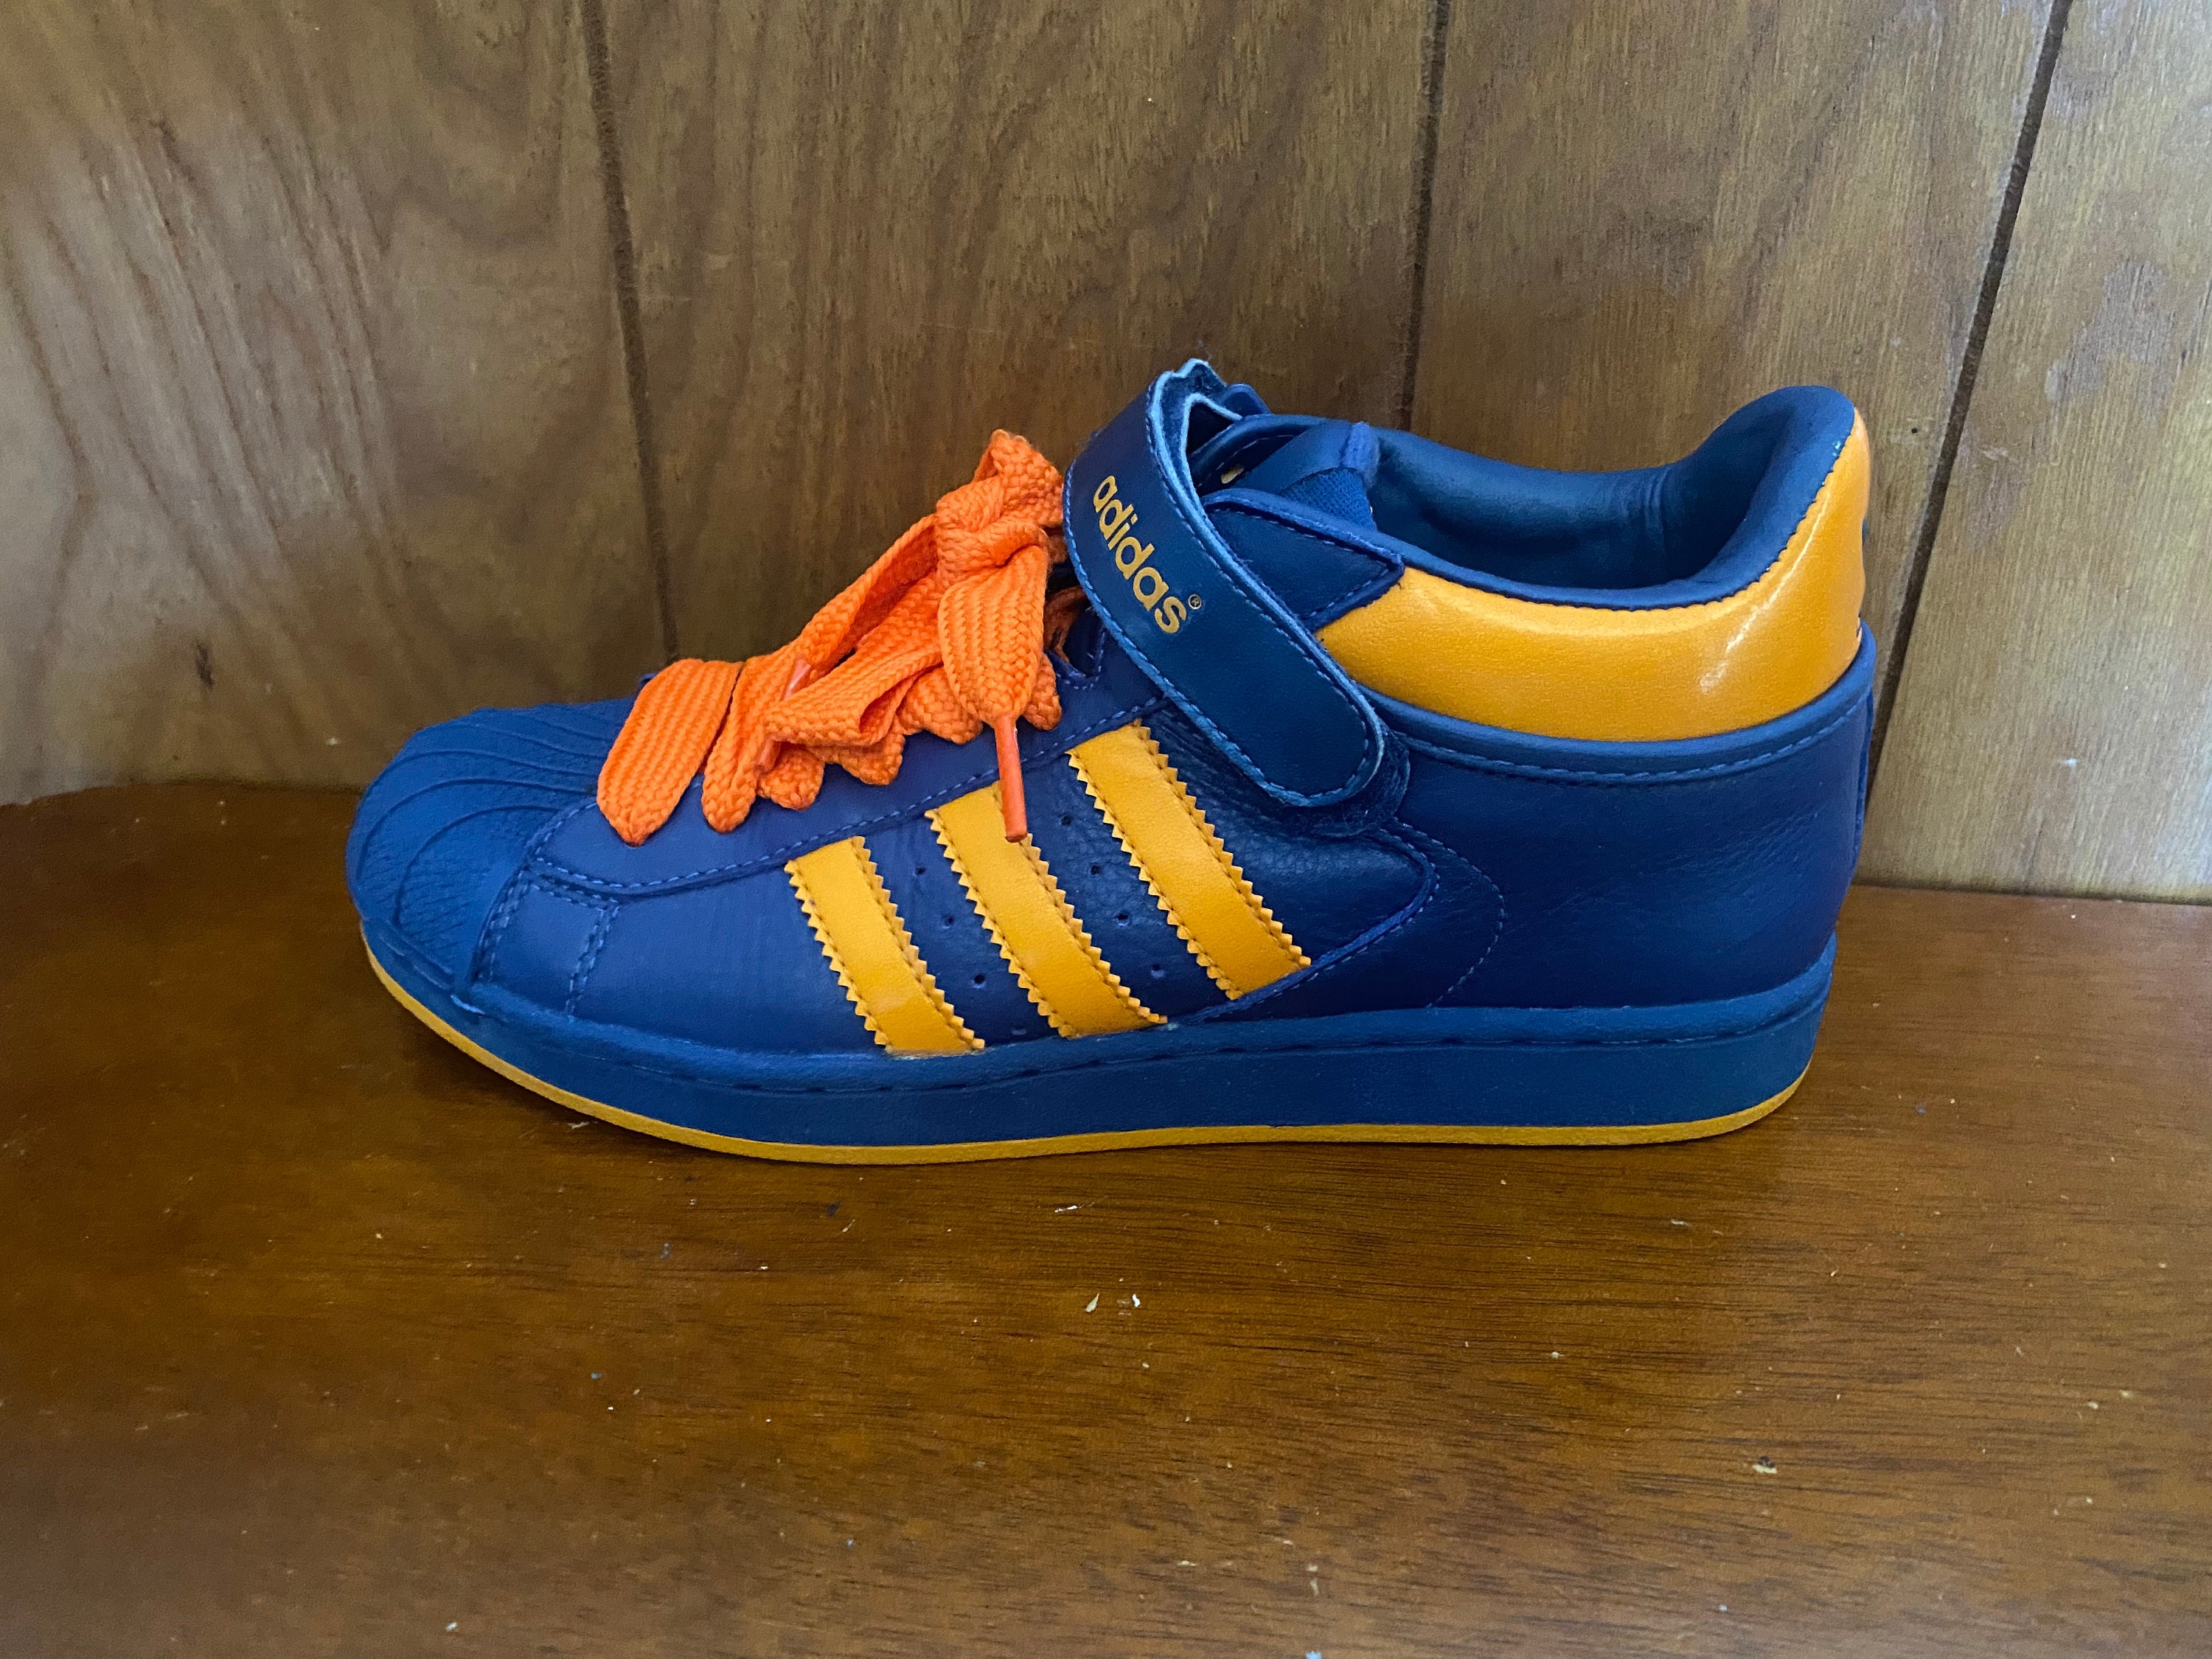 Vintage 2002 Hombre Adidas Superstar Zapatos Azules y Naranjas - España